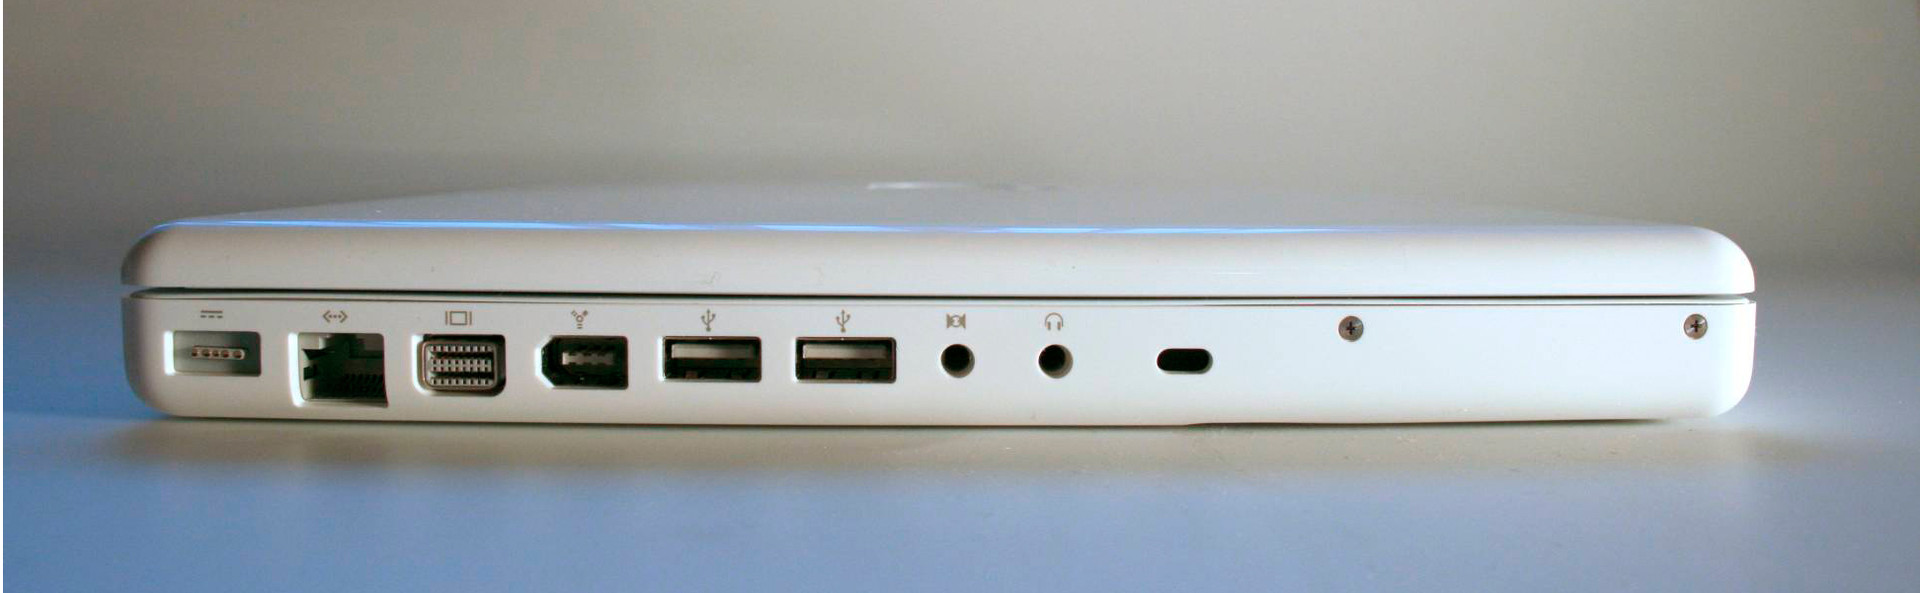 mid 2010 mac pro usb ports